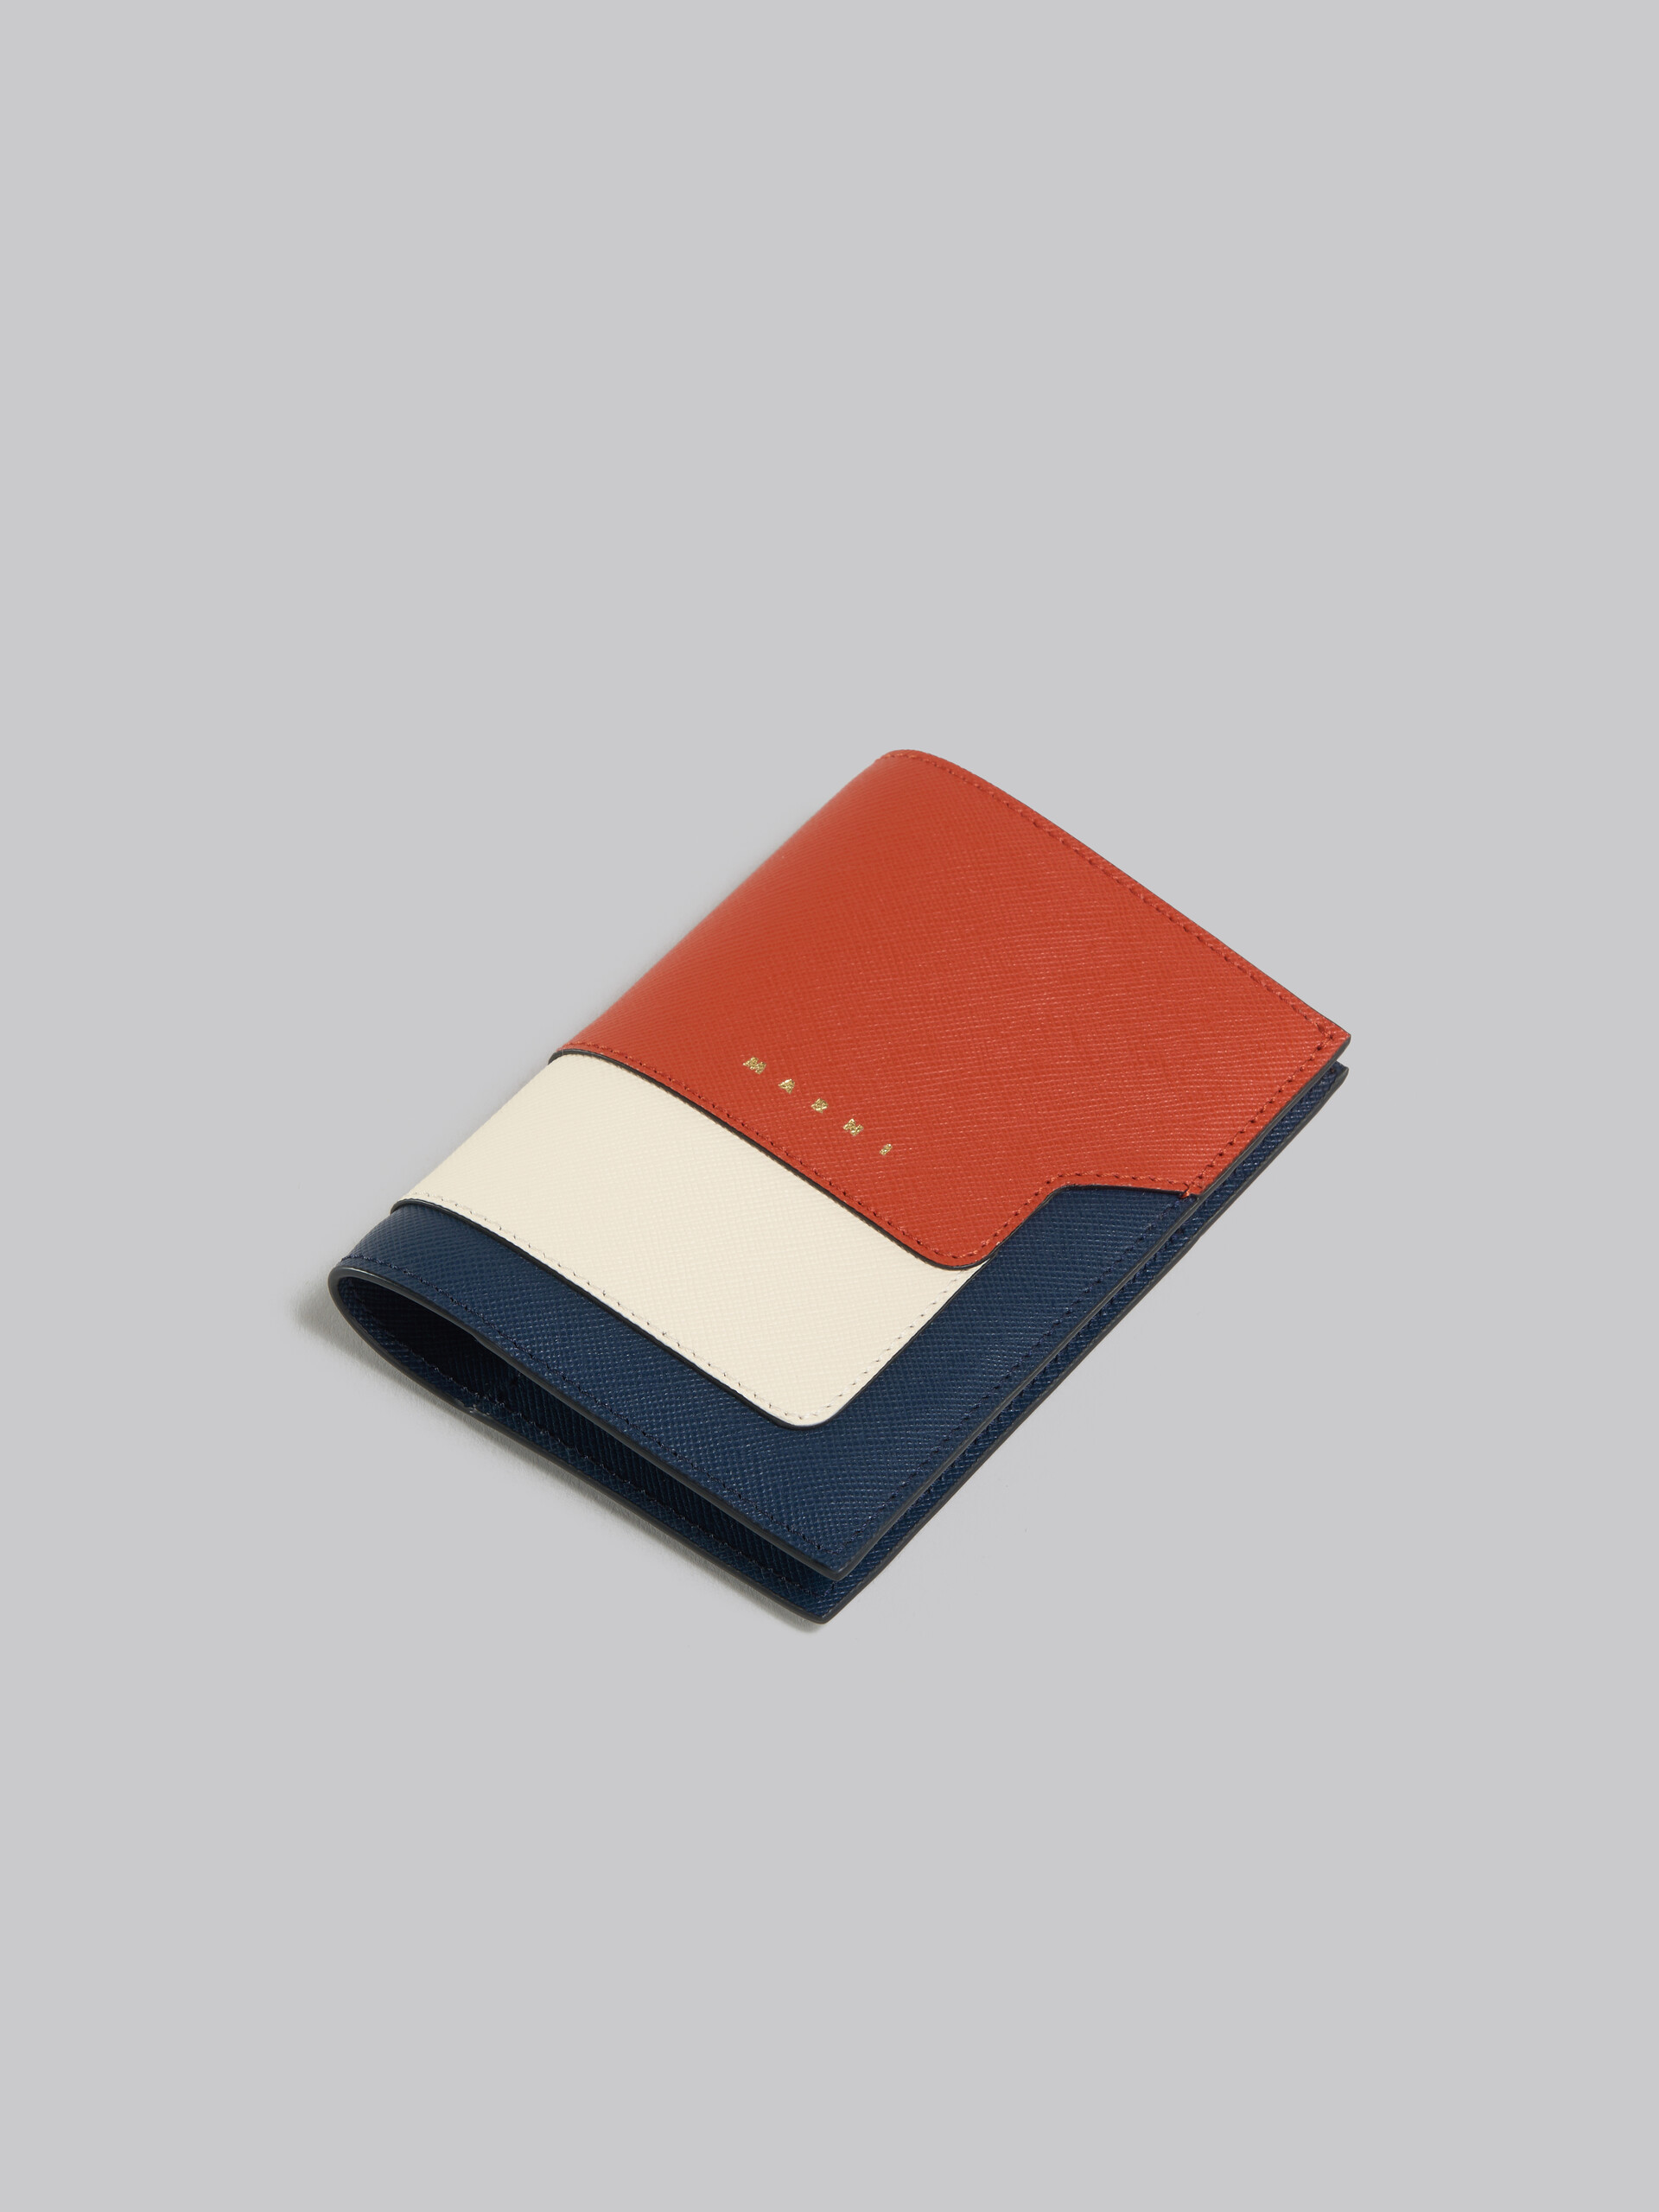 オレンジ クリーム ディープブルー サフィアーノレザー製 パスポート ホルダー - 財布 - Image 4